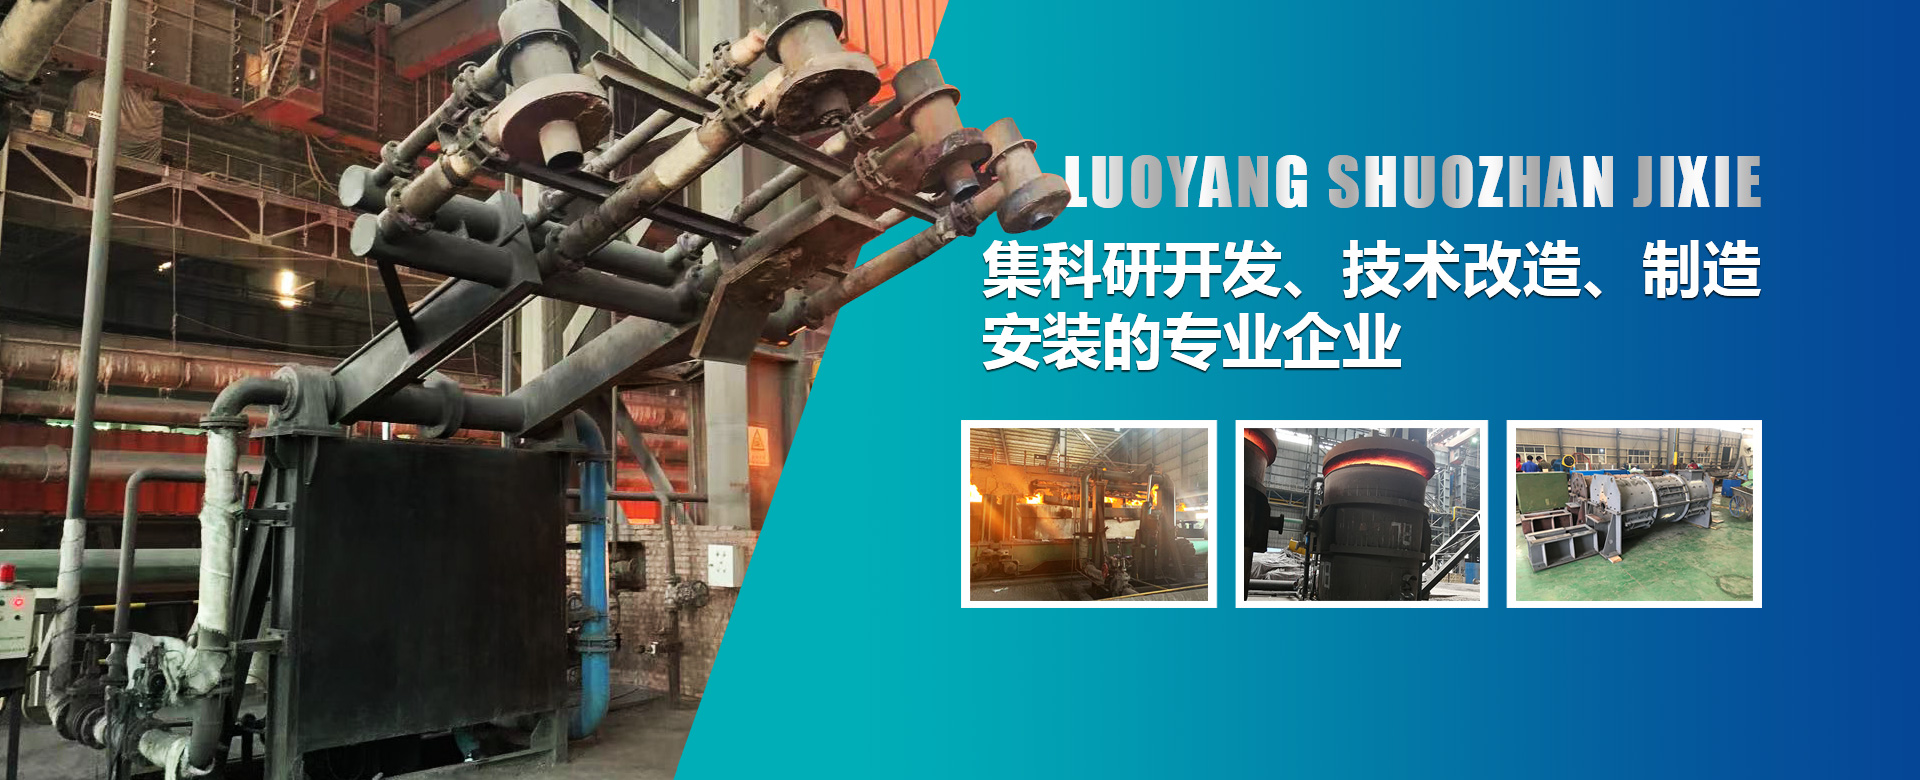 烘烤器是钢铁厂生产的必须设备，也是钢铁生产过程中能耗较大的设备